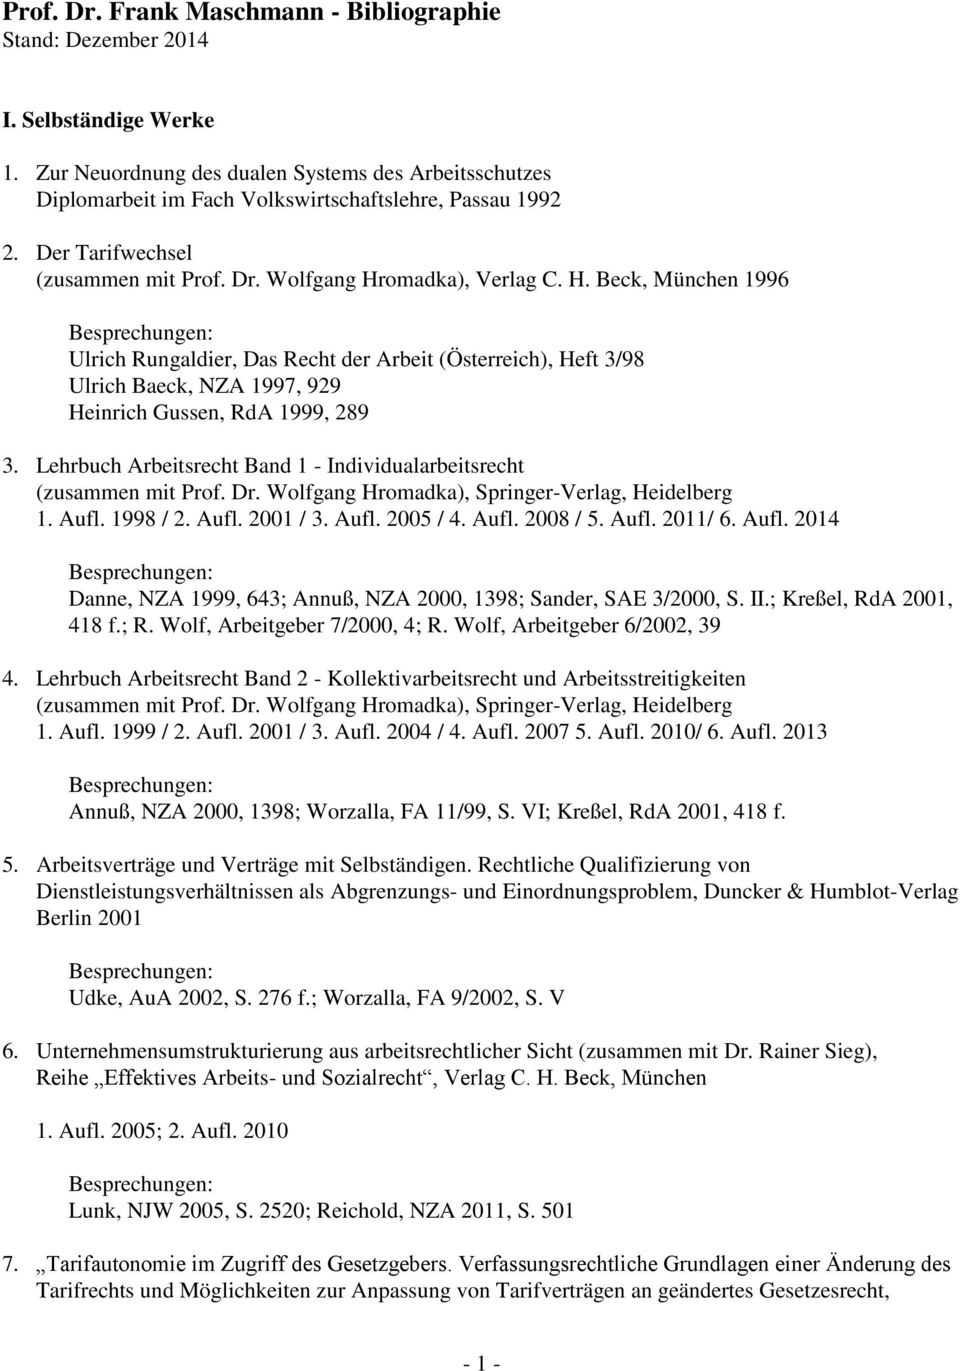 Lehrbuch Arbeitsrecht Band 1 - Individualarbeitsrecht (zusammen mit Prof. Dr. Wolfgang Hromadka), Springer-Verlag, Heidelberg 1. Aufl. 1998 / 2. Aufl. 2001 / 3. Aufl. 2005 / 4. Aufl. 2008 / 5. Aufl. 2011/ 6.